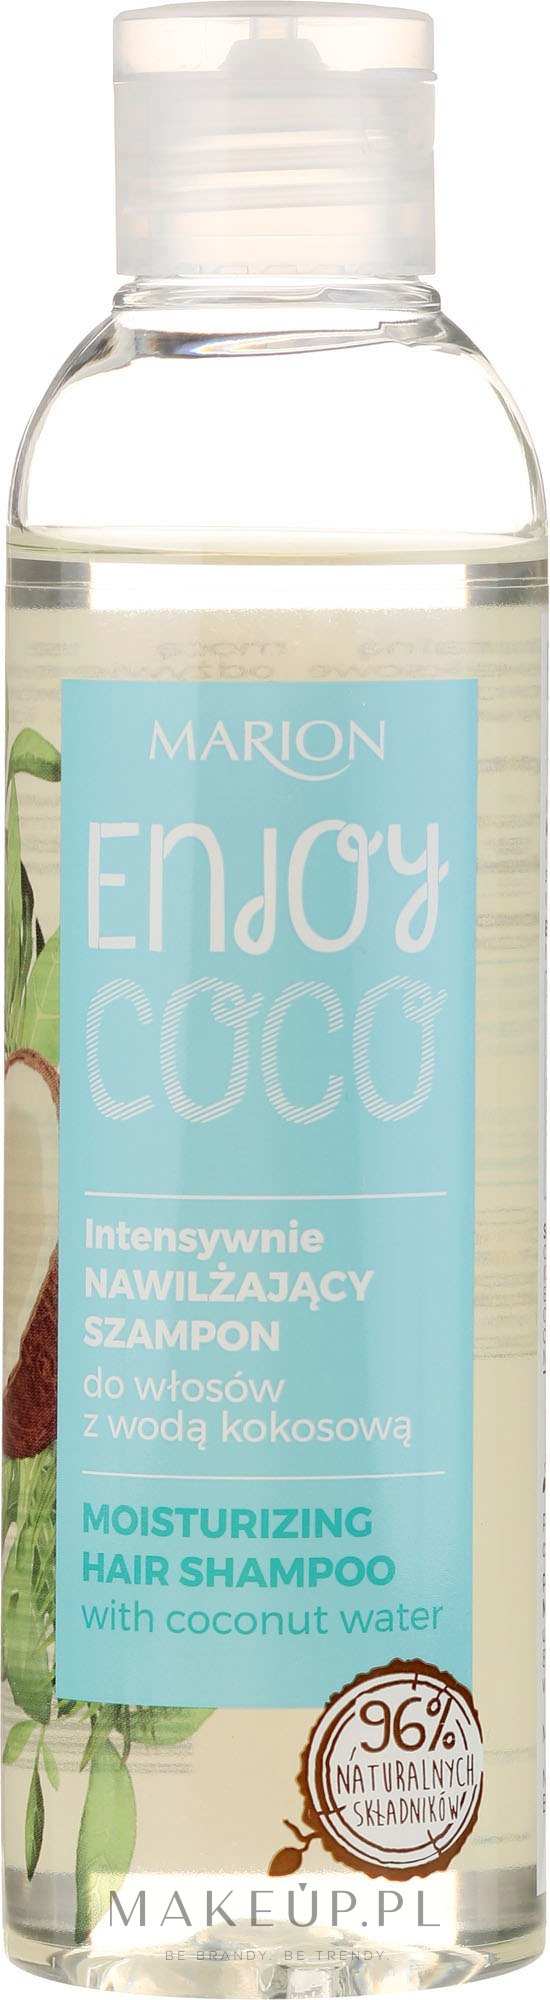 marion szampon woda kokosowa wizaz